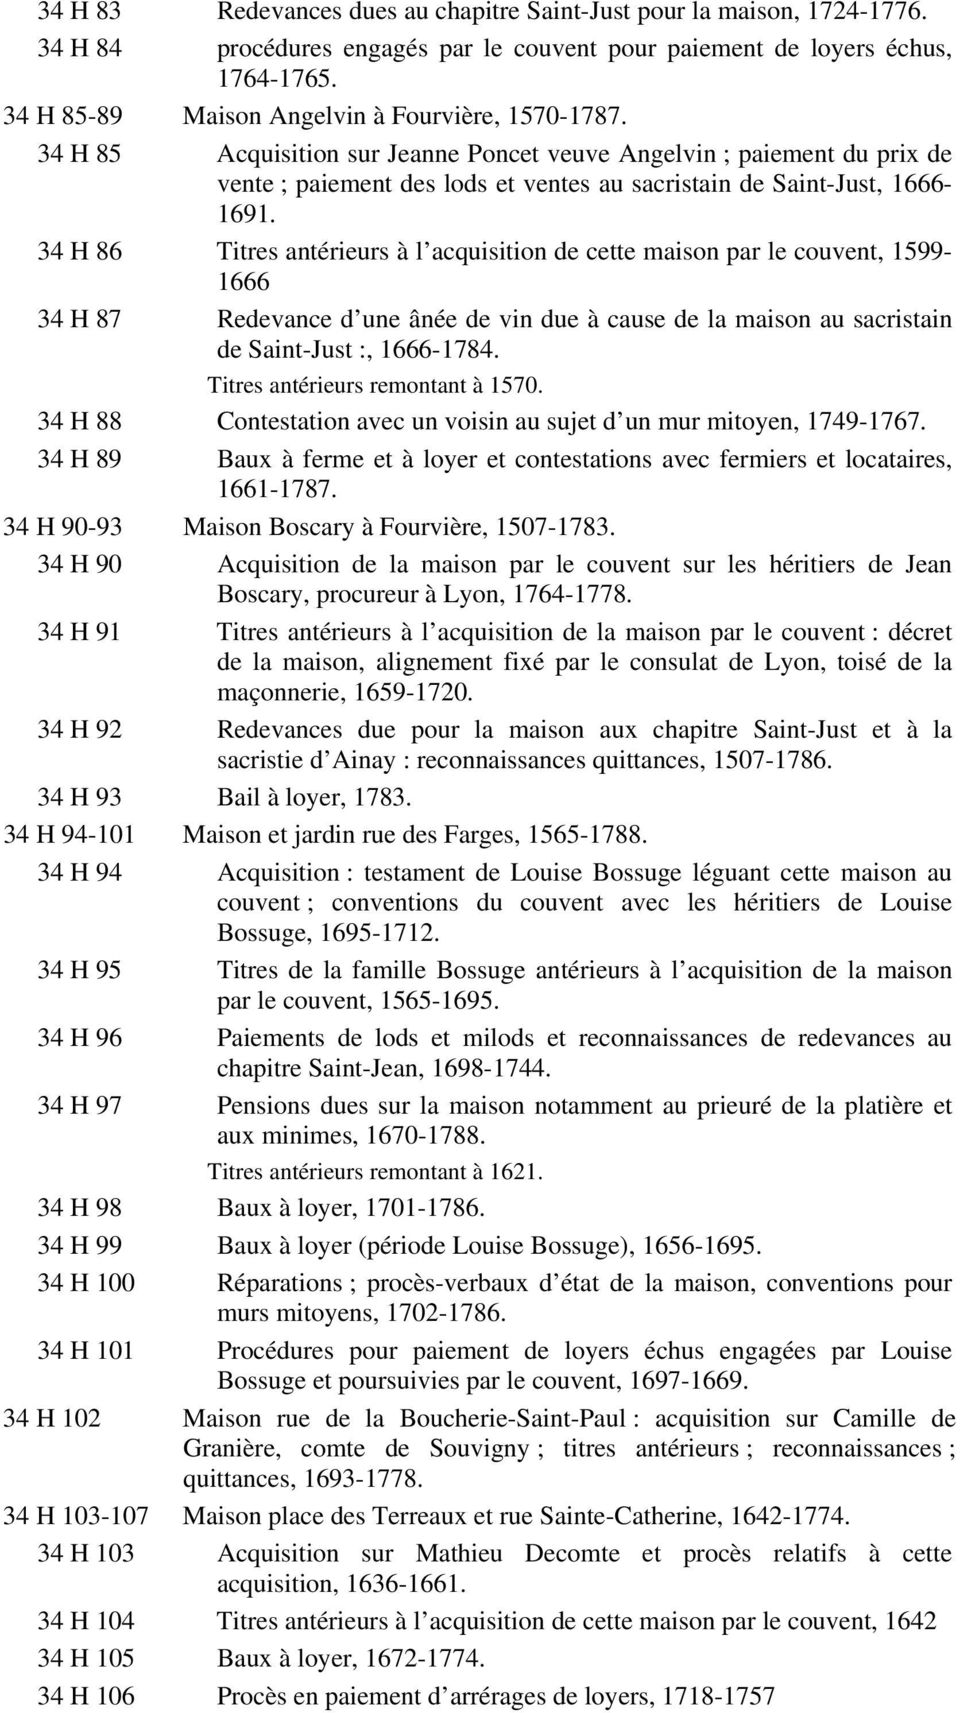 34 H 85 Acquisition sur Jeanne Poncet veuve Angelvin ; paiement du prix de vente ; paiement des lods et ventes au sacristain de Saint-Just, 1666-1691.